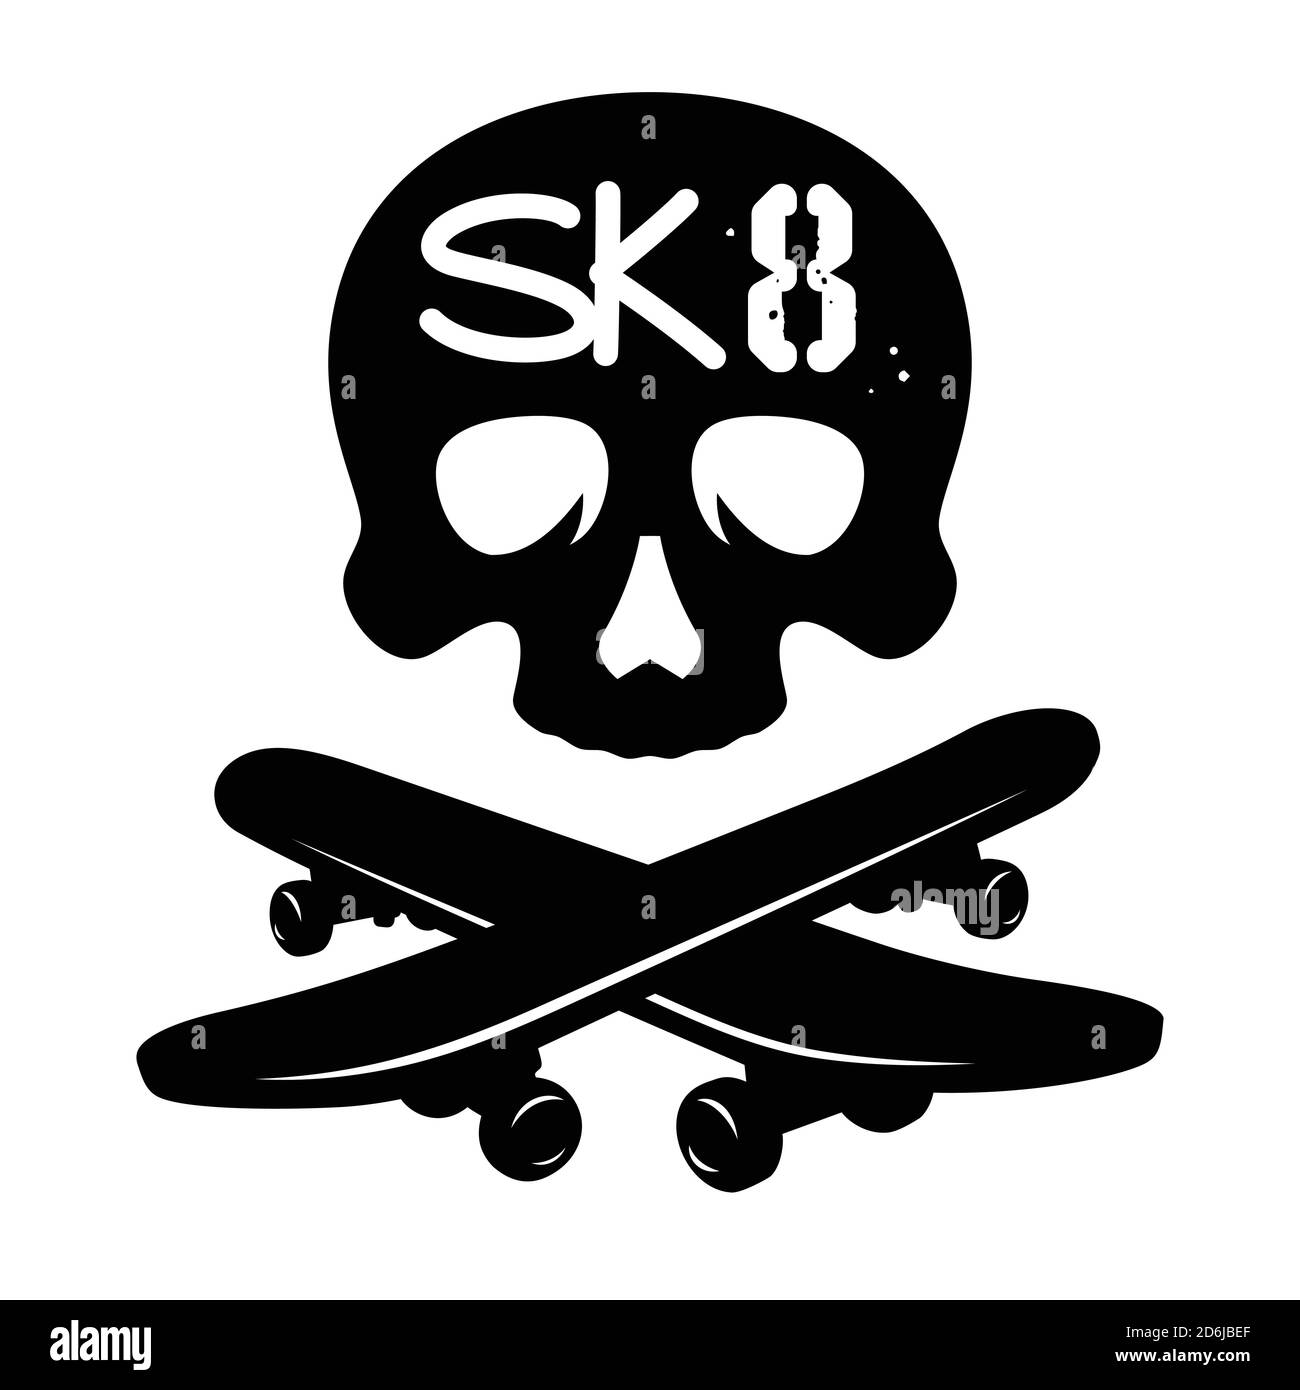 T-shirt tendance sur le thème du skateboard. Illustration vectorielle avec un crâne et des planches à roulettes Illustration de Vecteur